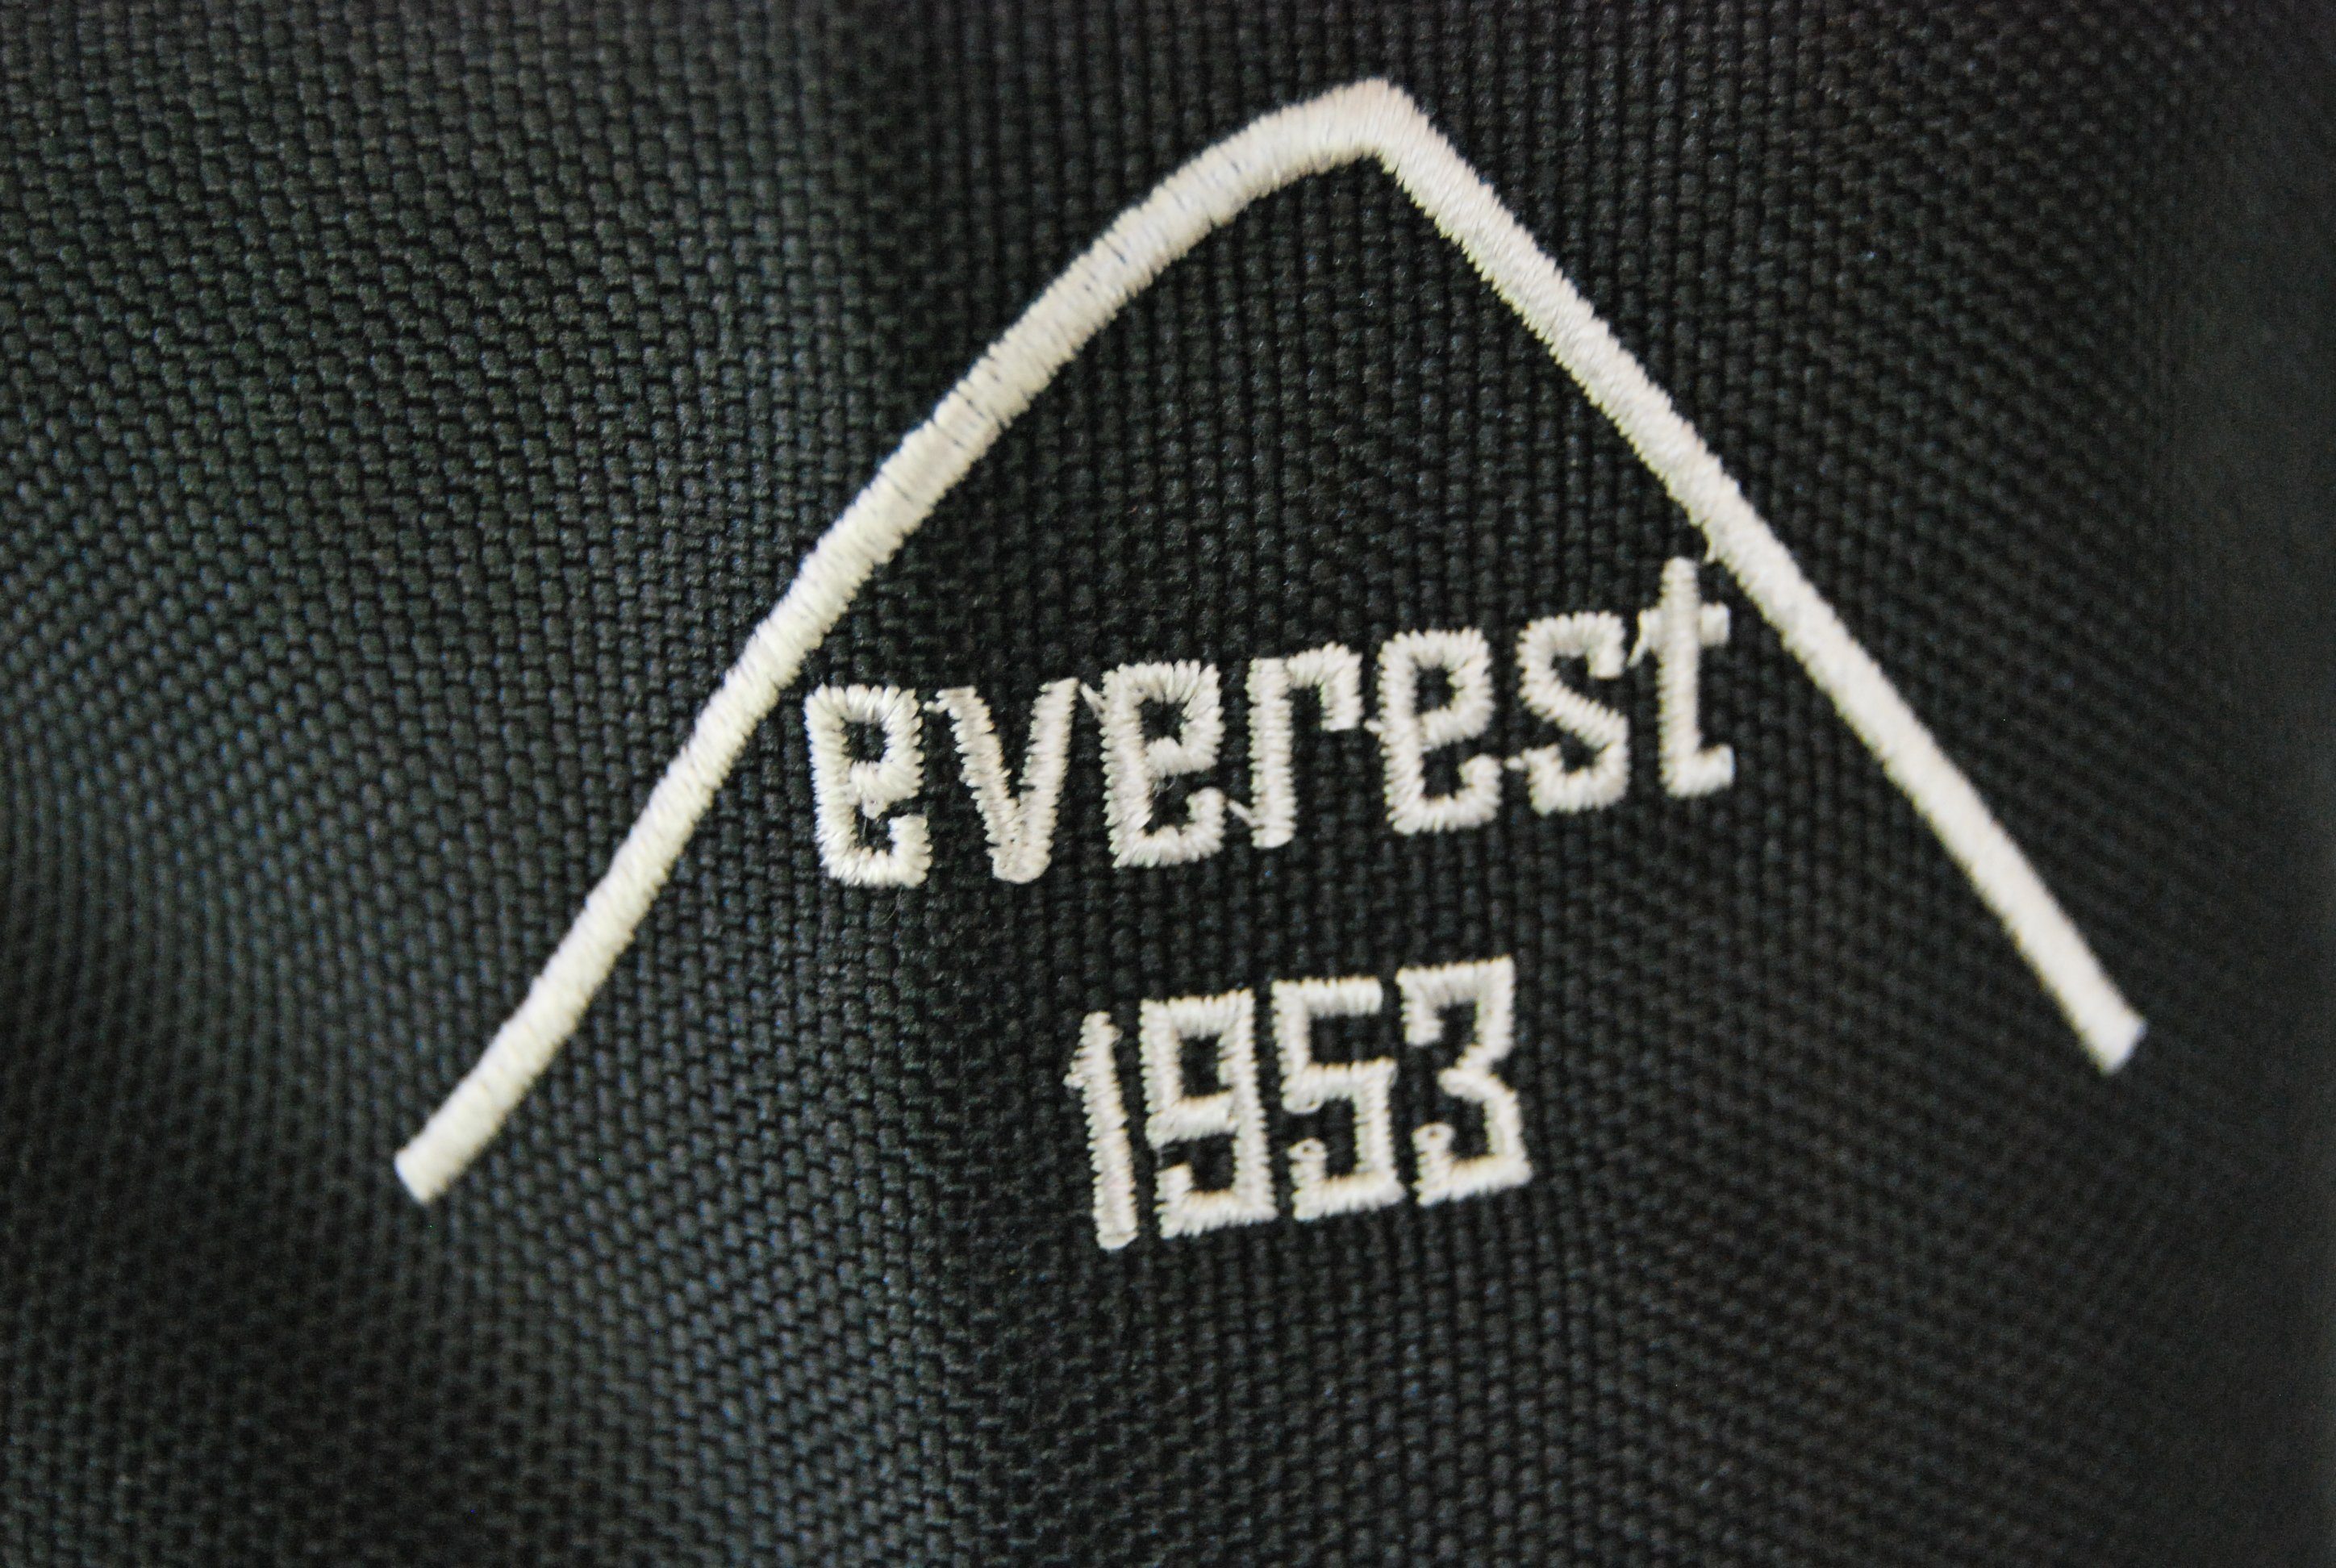 everest 1953 Revers mit Gamaschen Gaiter Outdoor Klettverschluß Beinlinge Gr. schwarz Reißverschlüsse mit zusätzlichem Wasserdicht 10.000 mm S/M